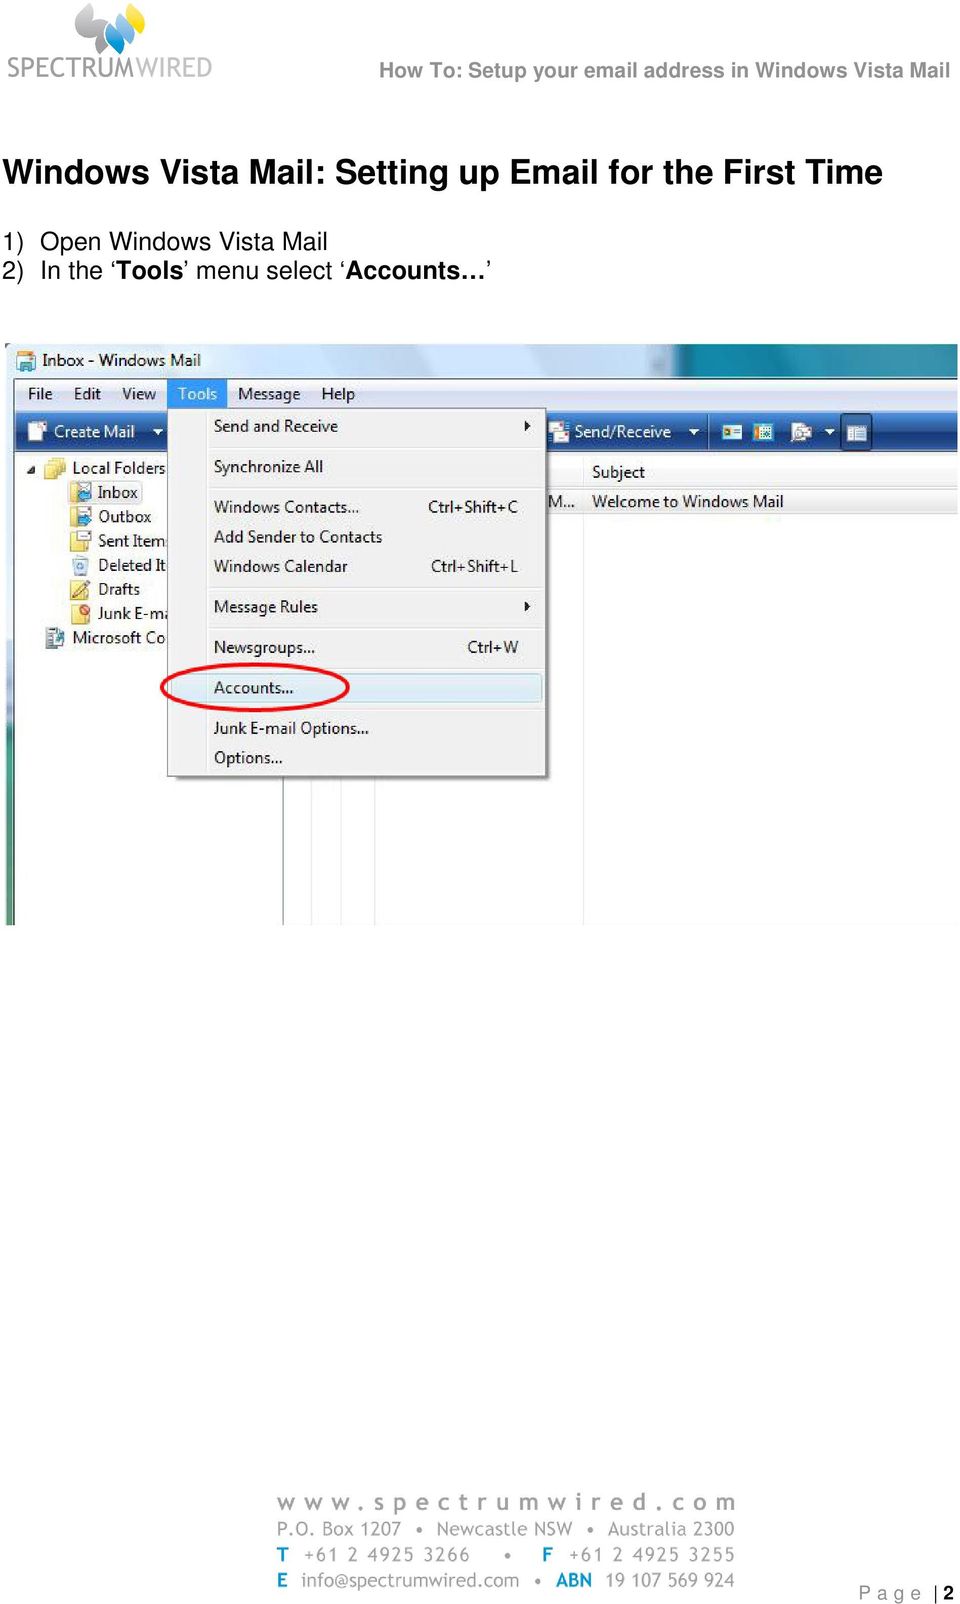 Open Windows Vista Mail 2) In